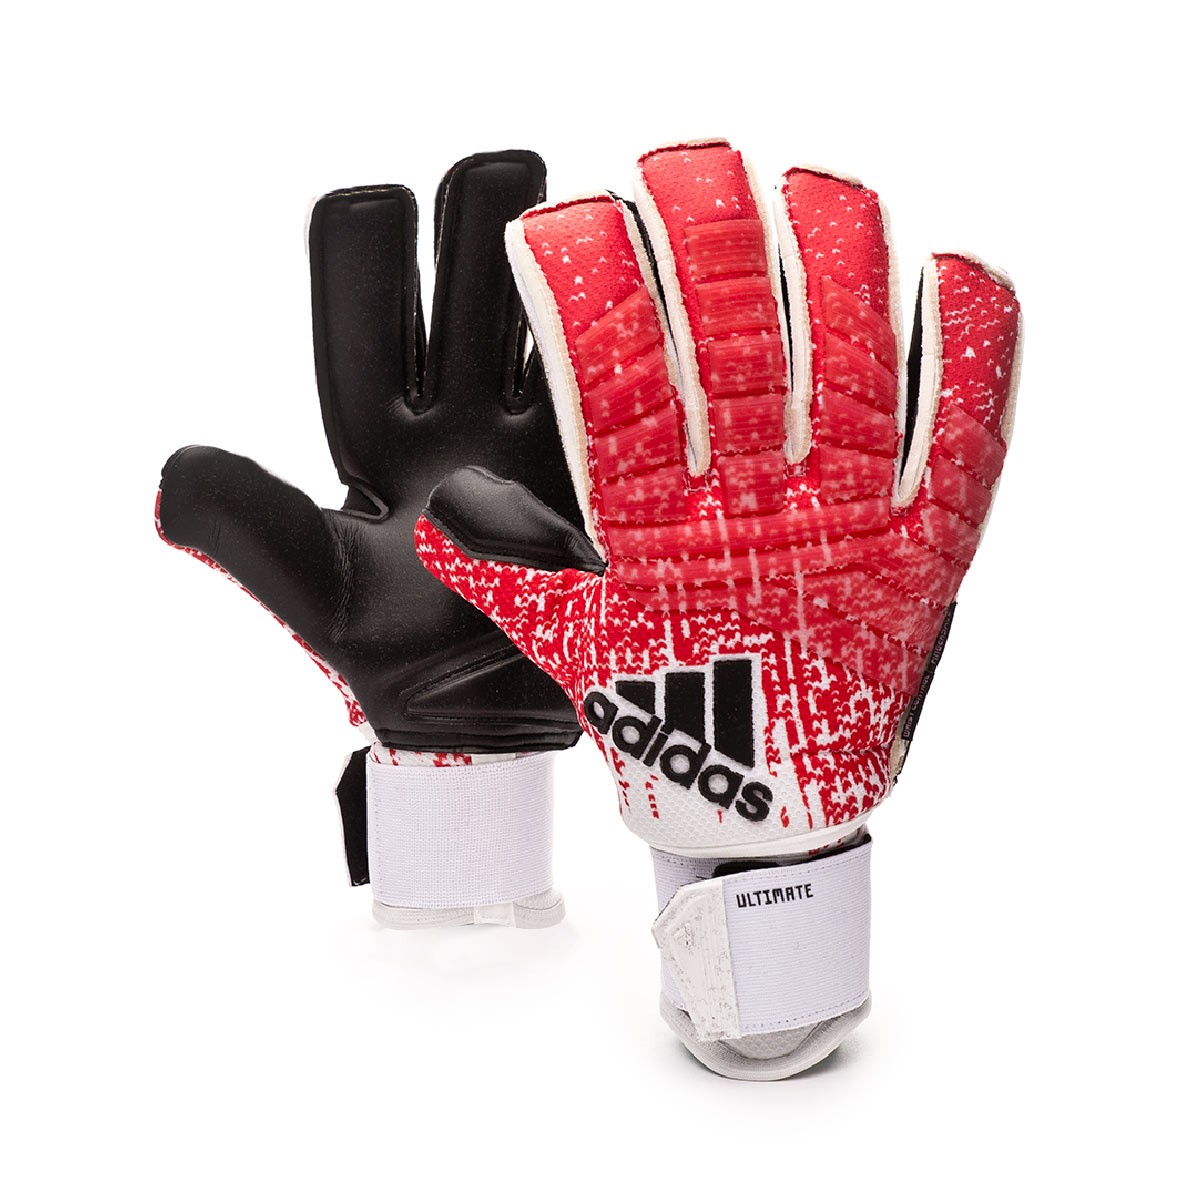 predator ultimate gloves